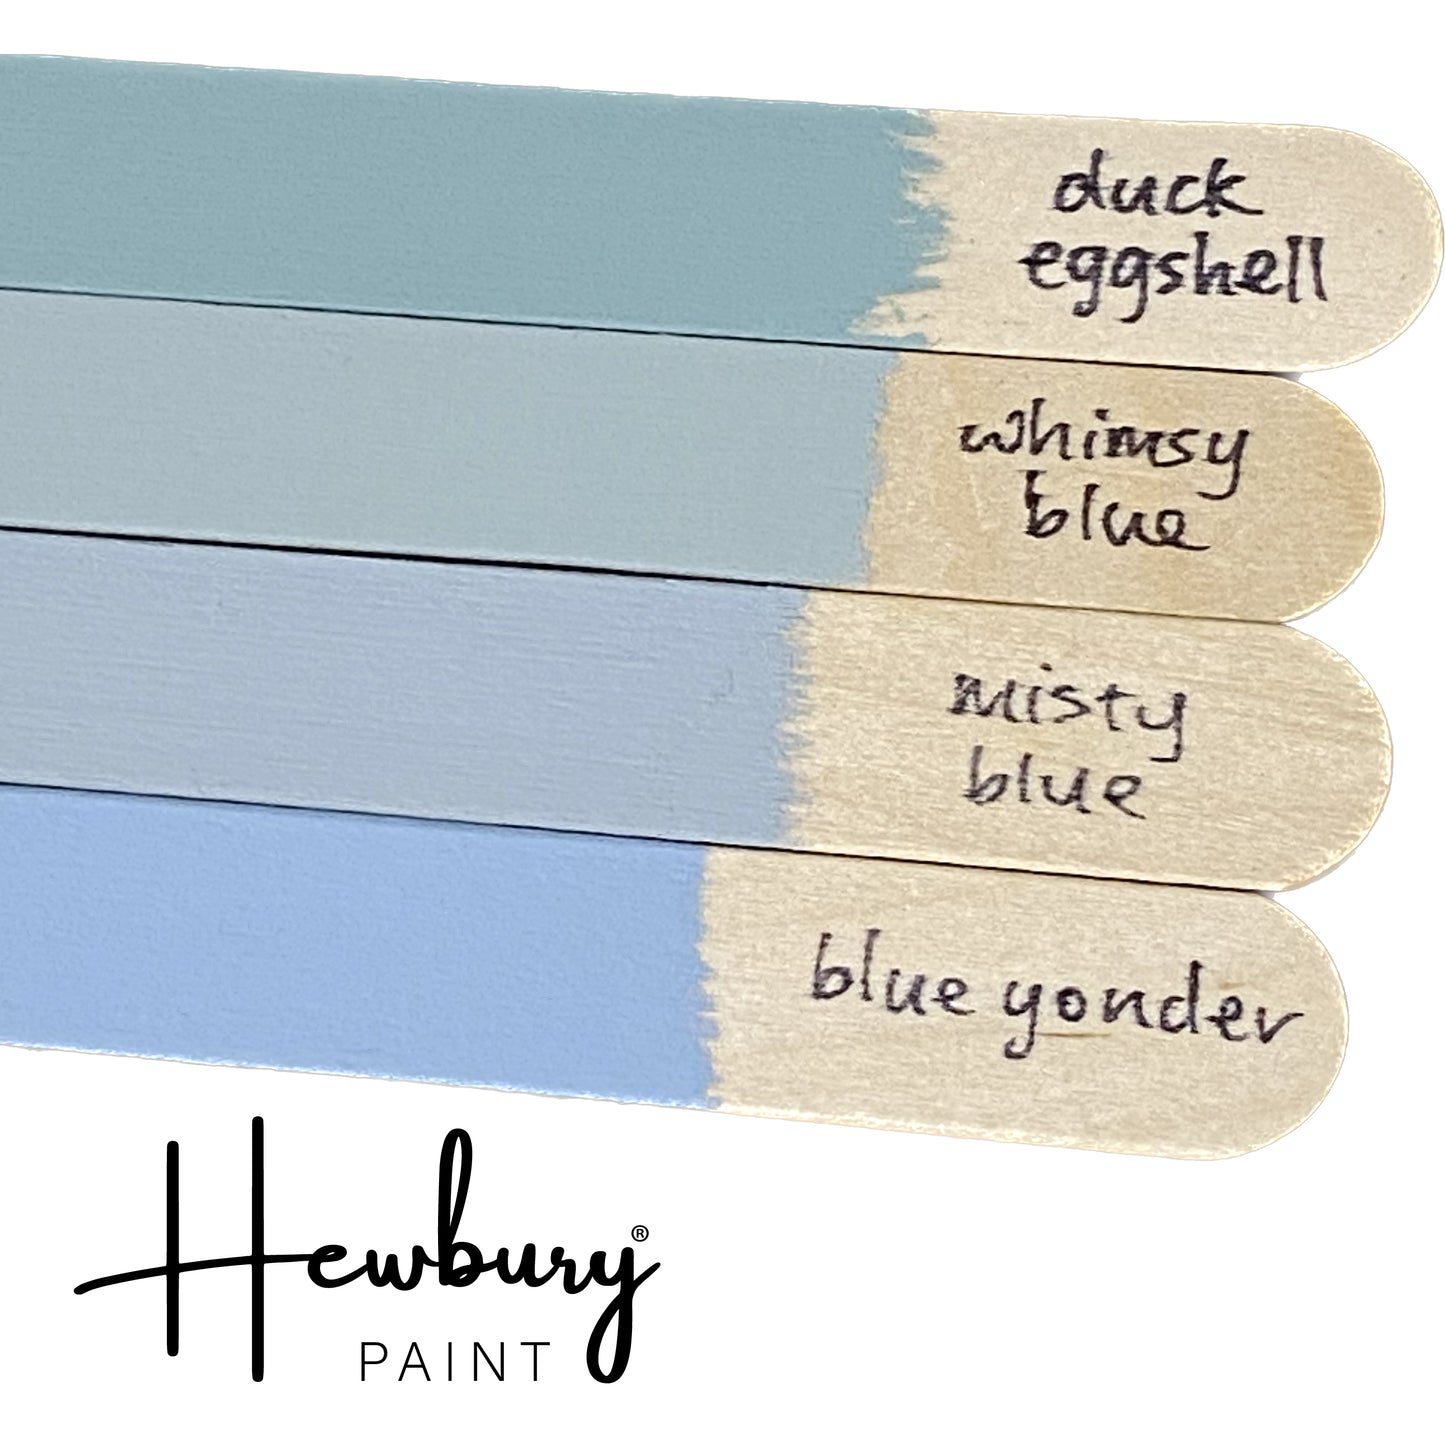 Hewbury Paint® - DUCK EGGSHELL